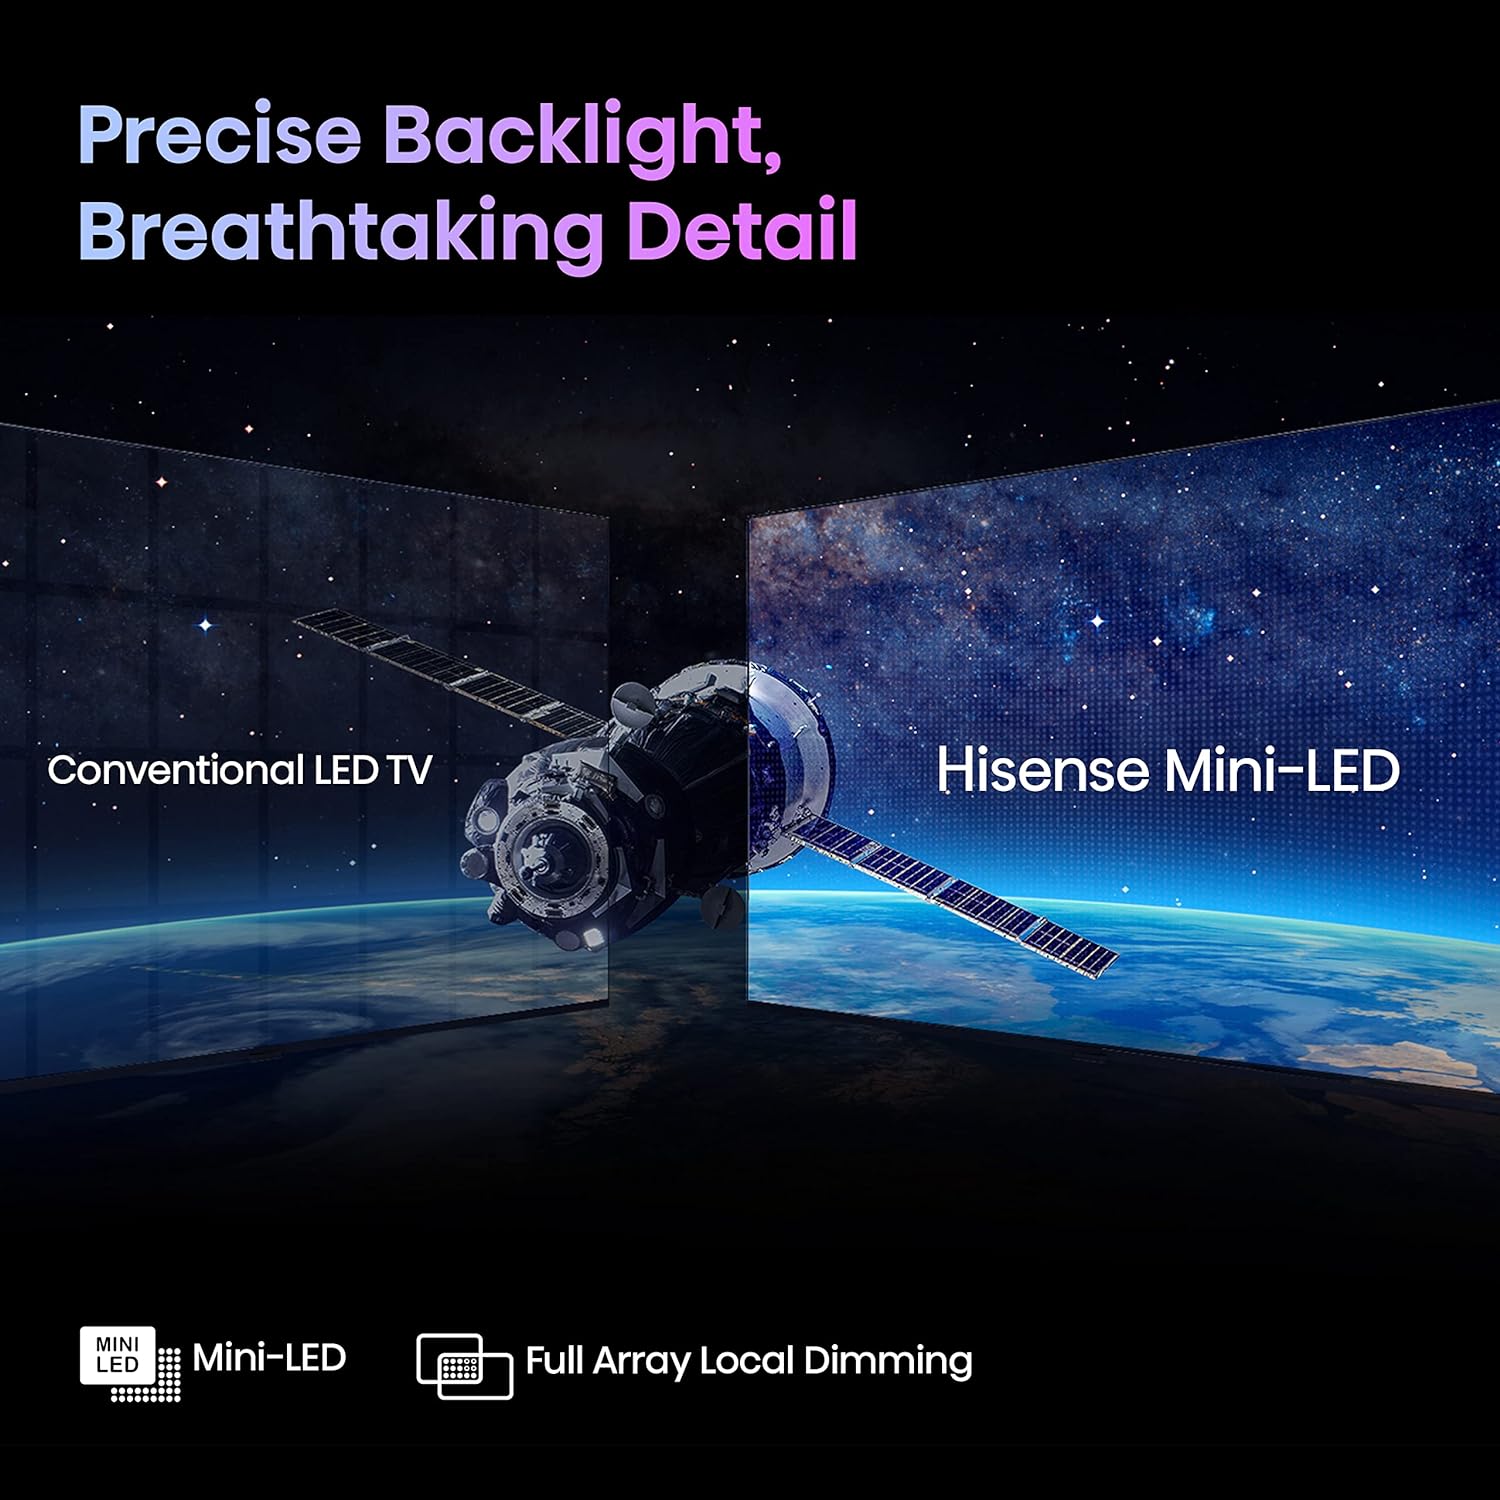 Hisense U7K 55" 4K ULED Mini-LED Android Smart TV